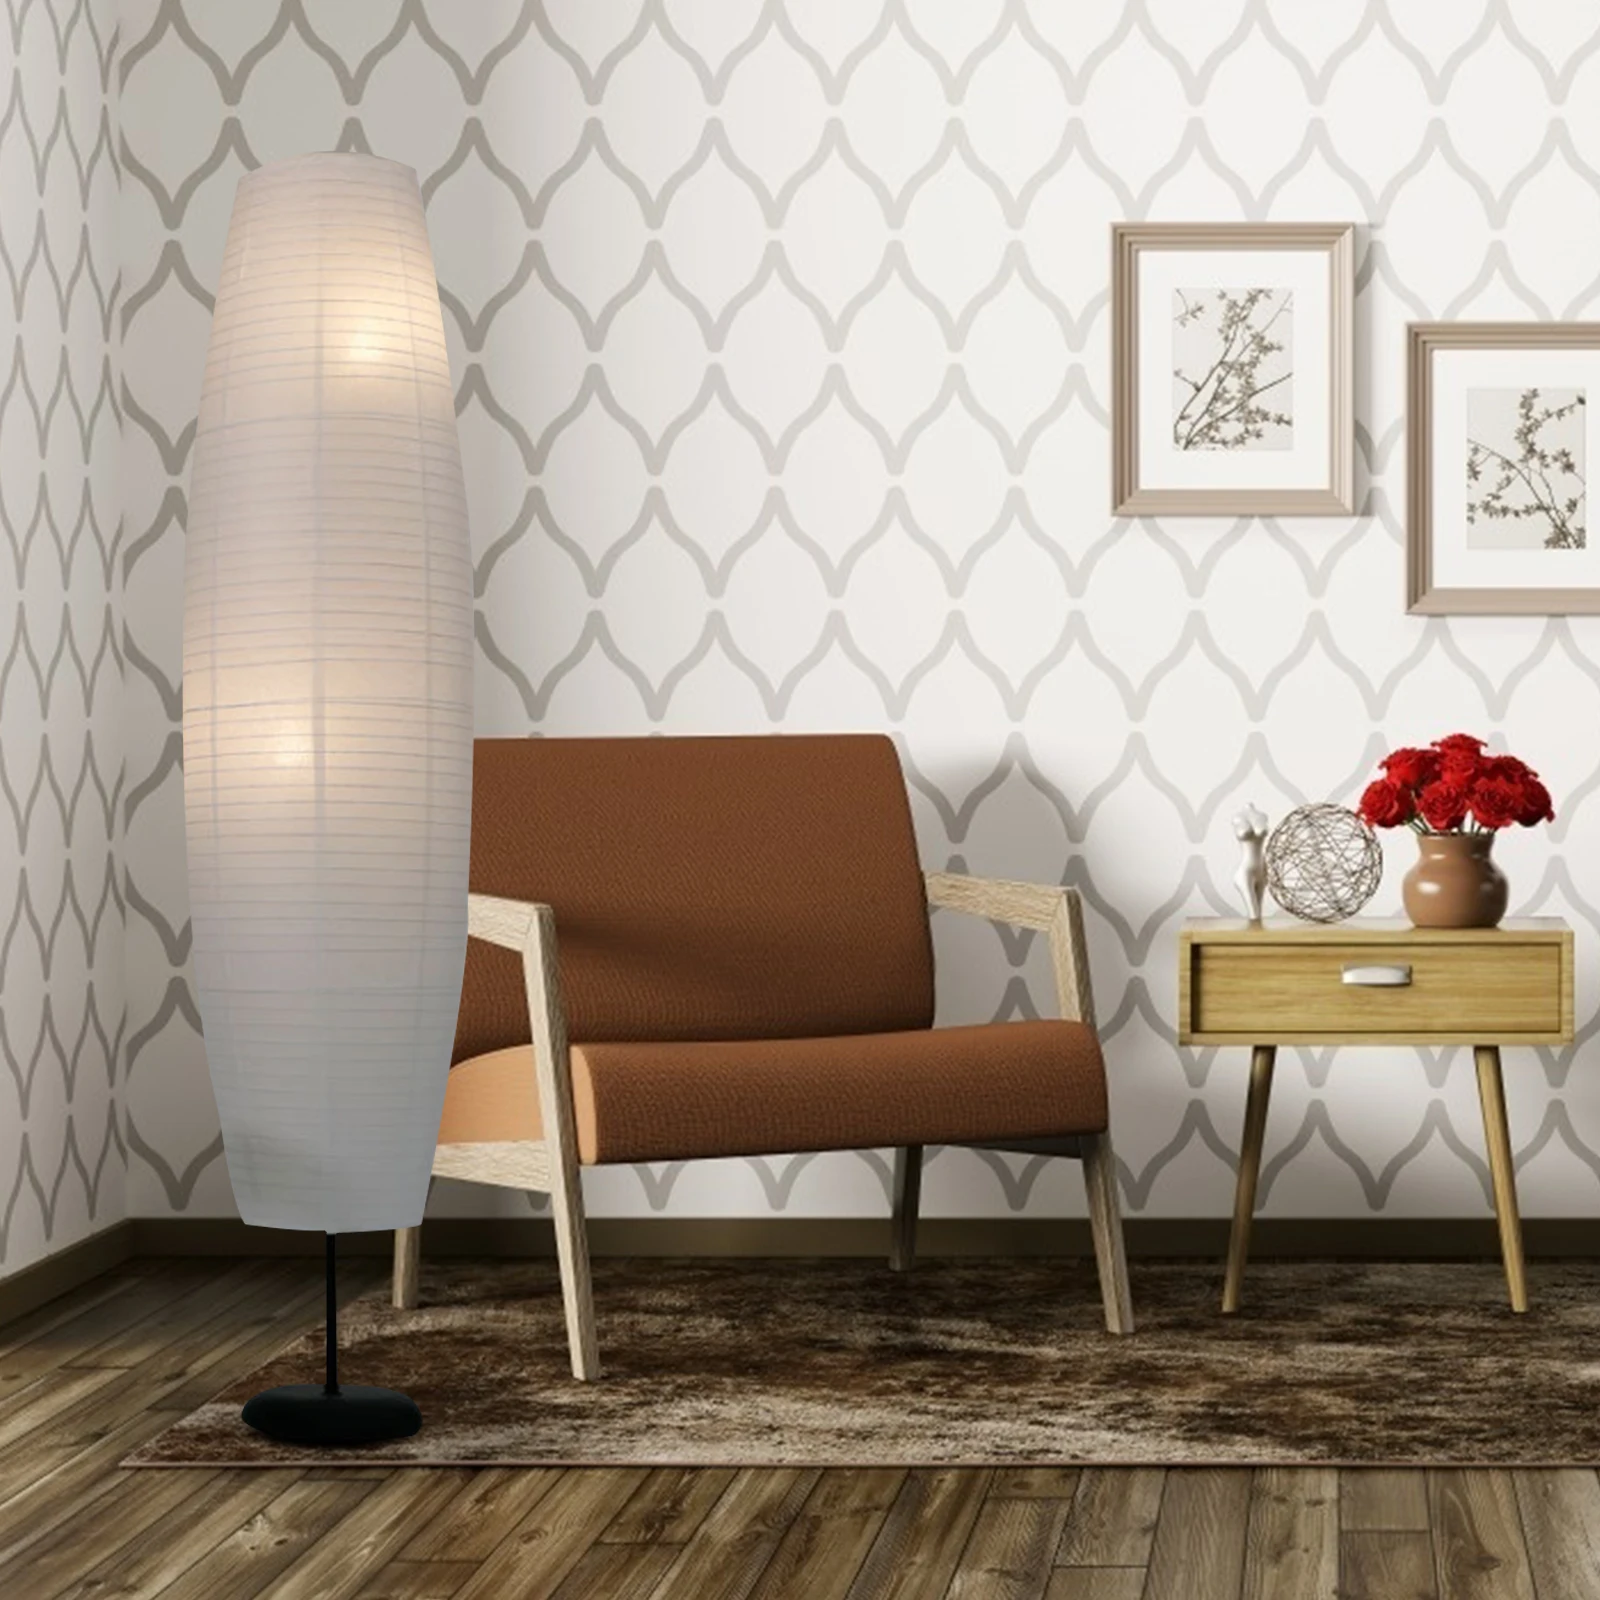 Cubierta de luz de suelo para el hogar, pantalla de papel nórdico, cubierta de luz elegante, lámpara de pie minimalista de estilo europeo, viento para el hogar sin soporte